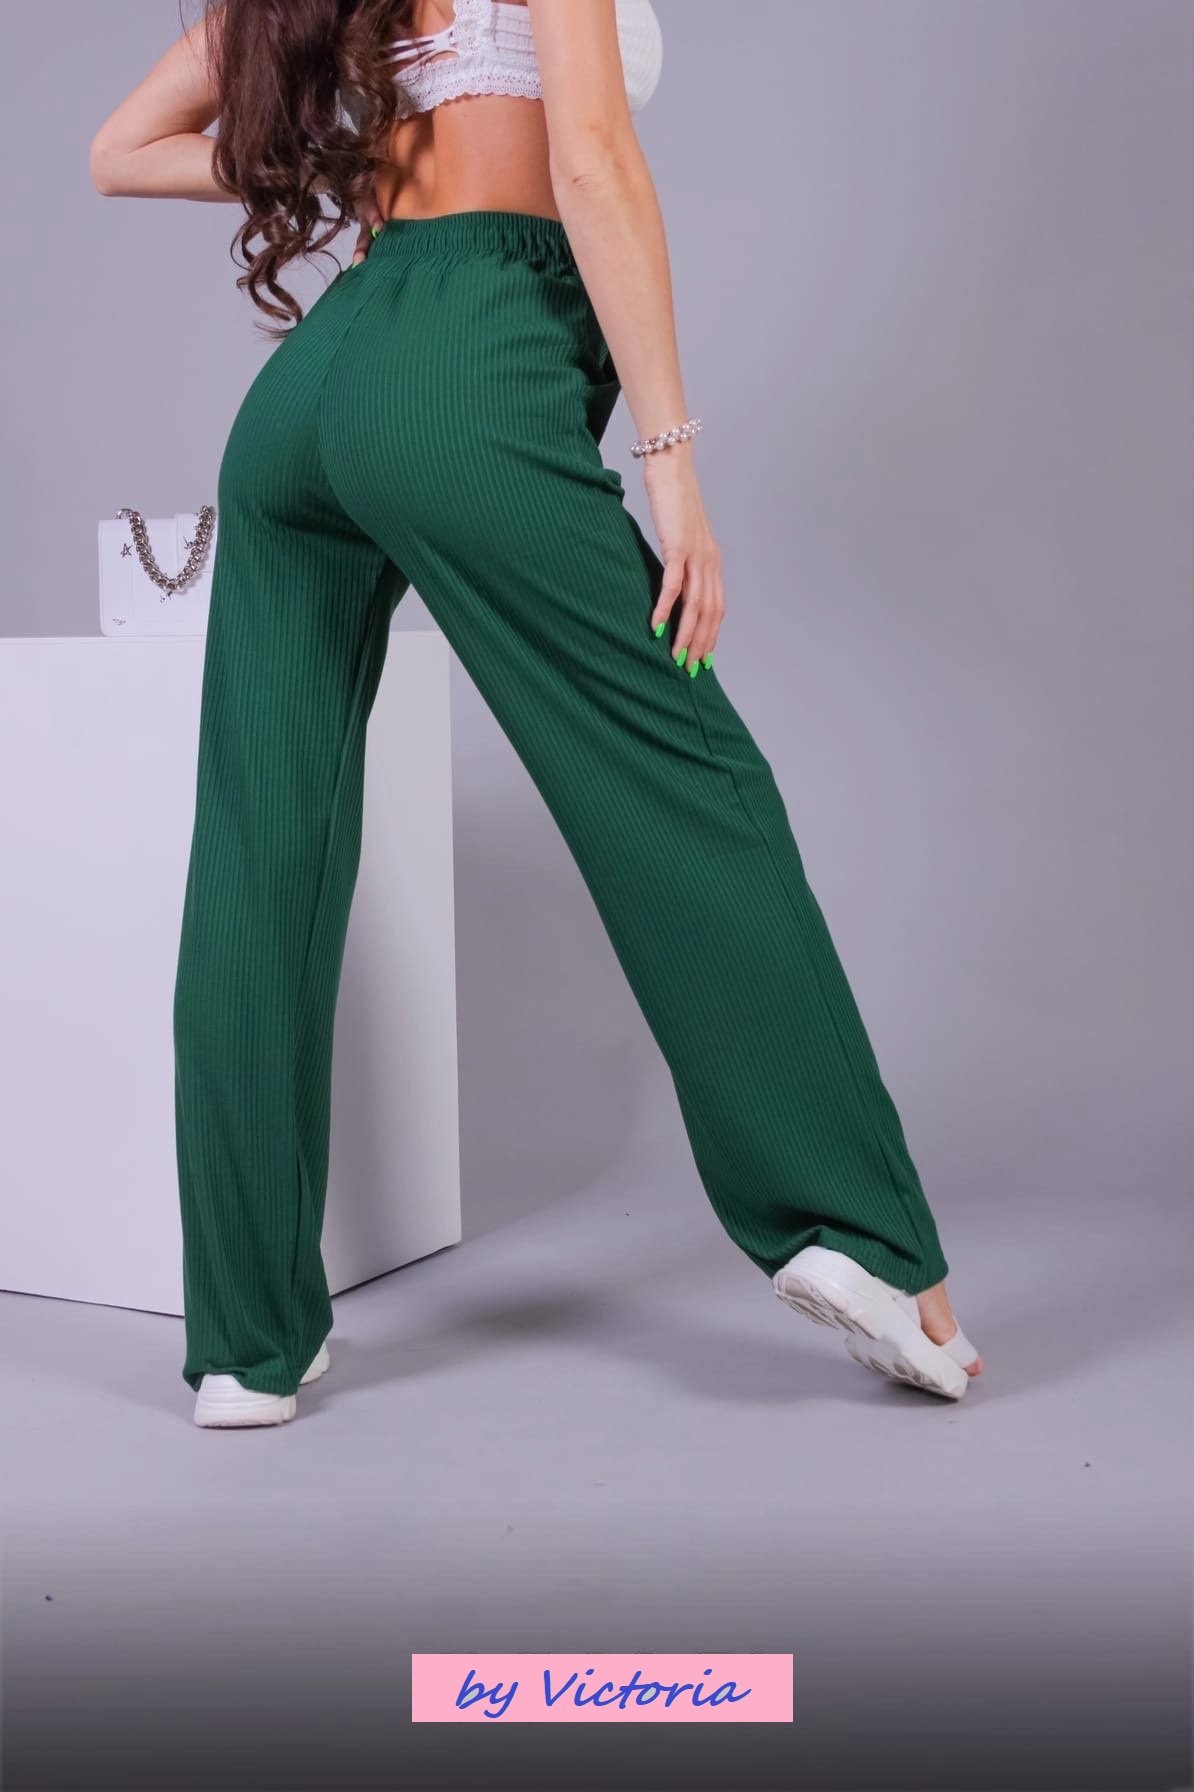 Женские брюки-клёш в рубчик, зеленые купить по цене 1499 ₽ винтернет-магазине KazanExpress